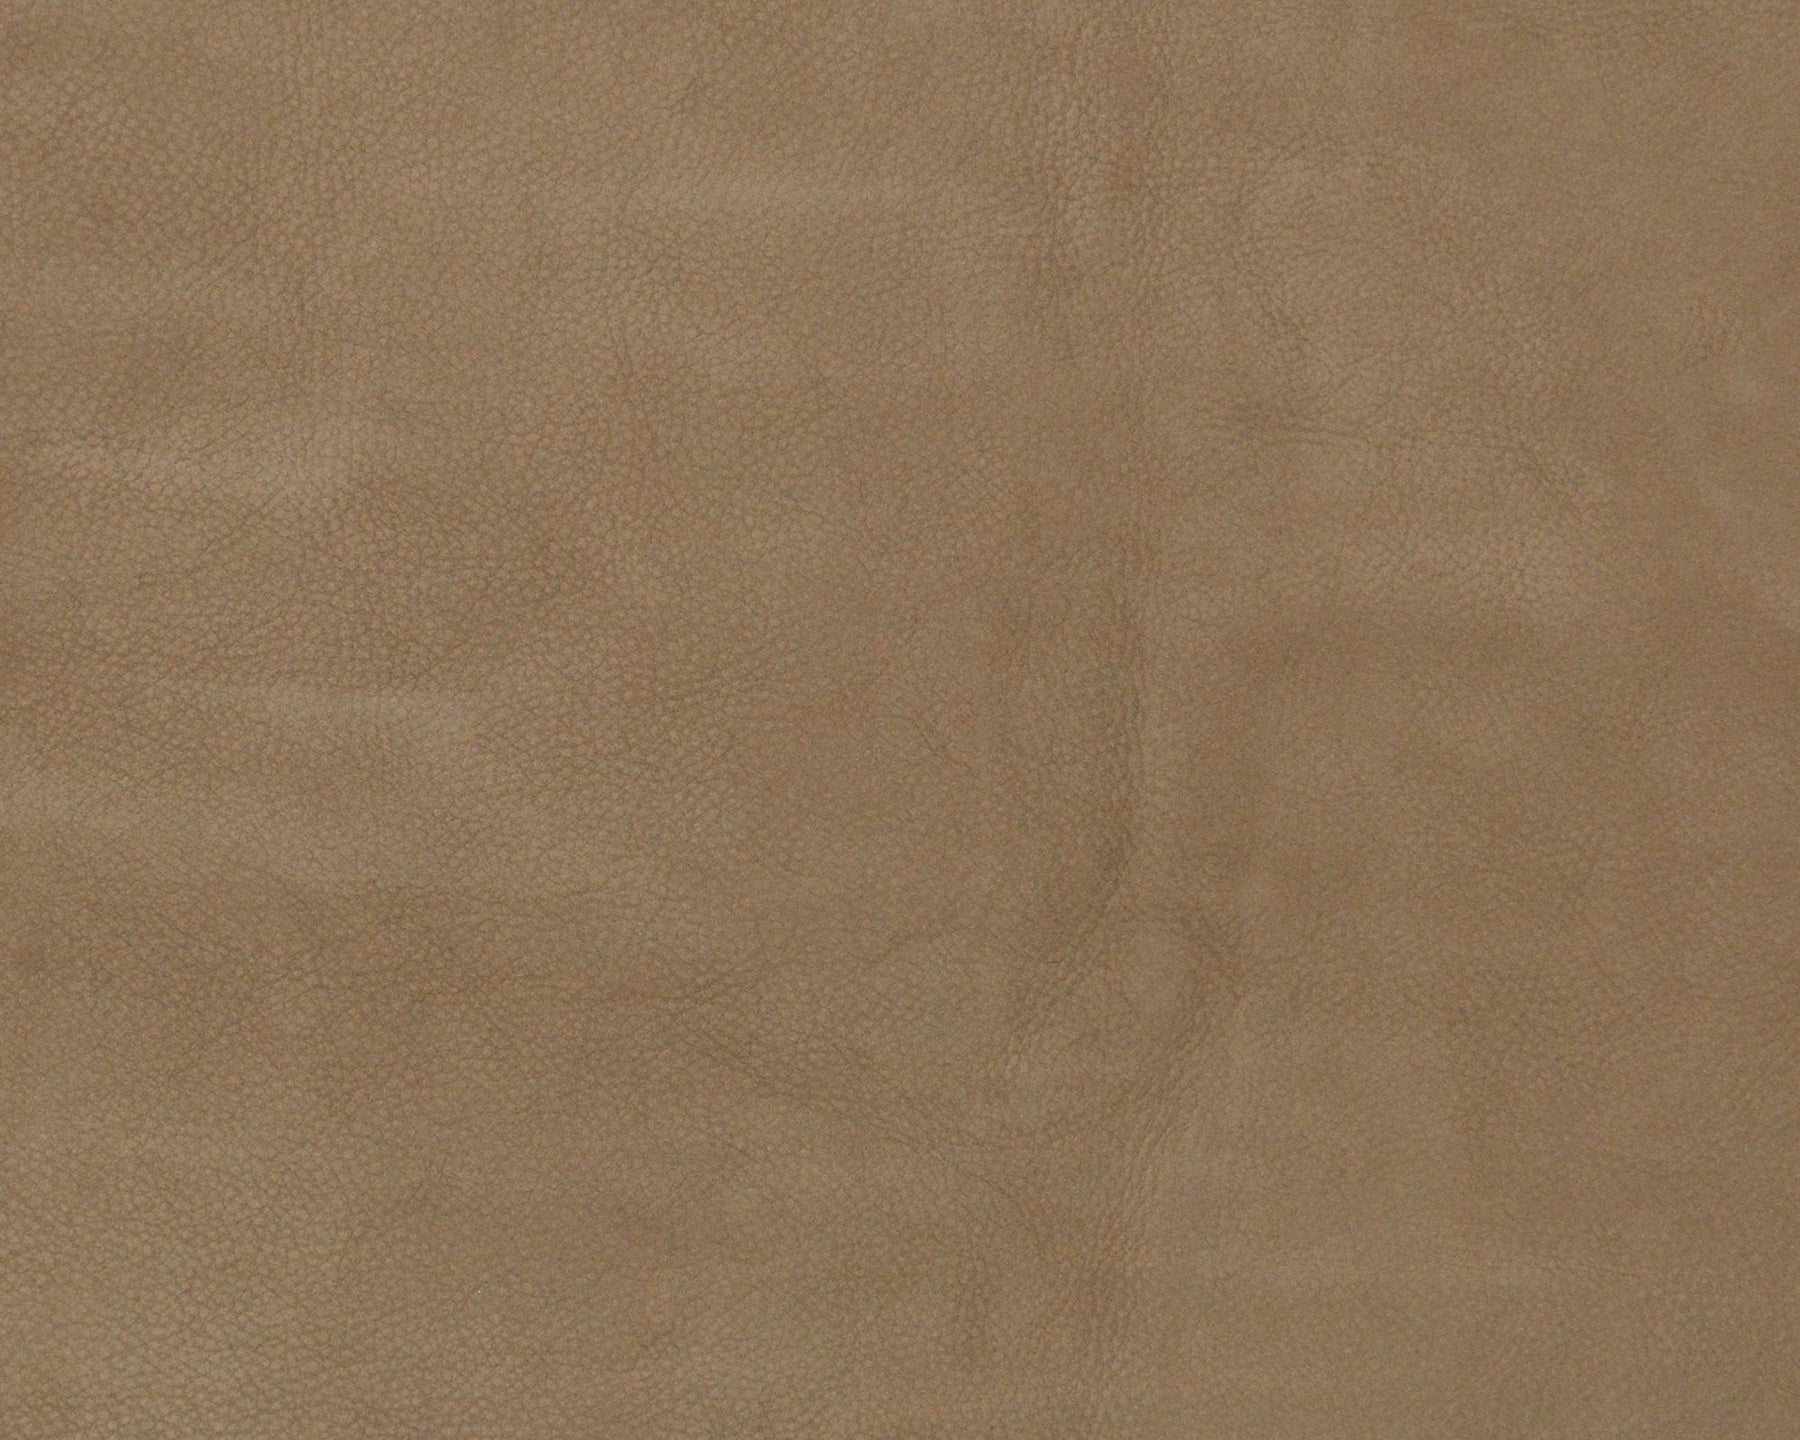 Chamois Leather - 1715 Elefant | DSHOP